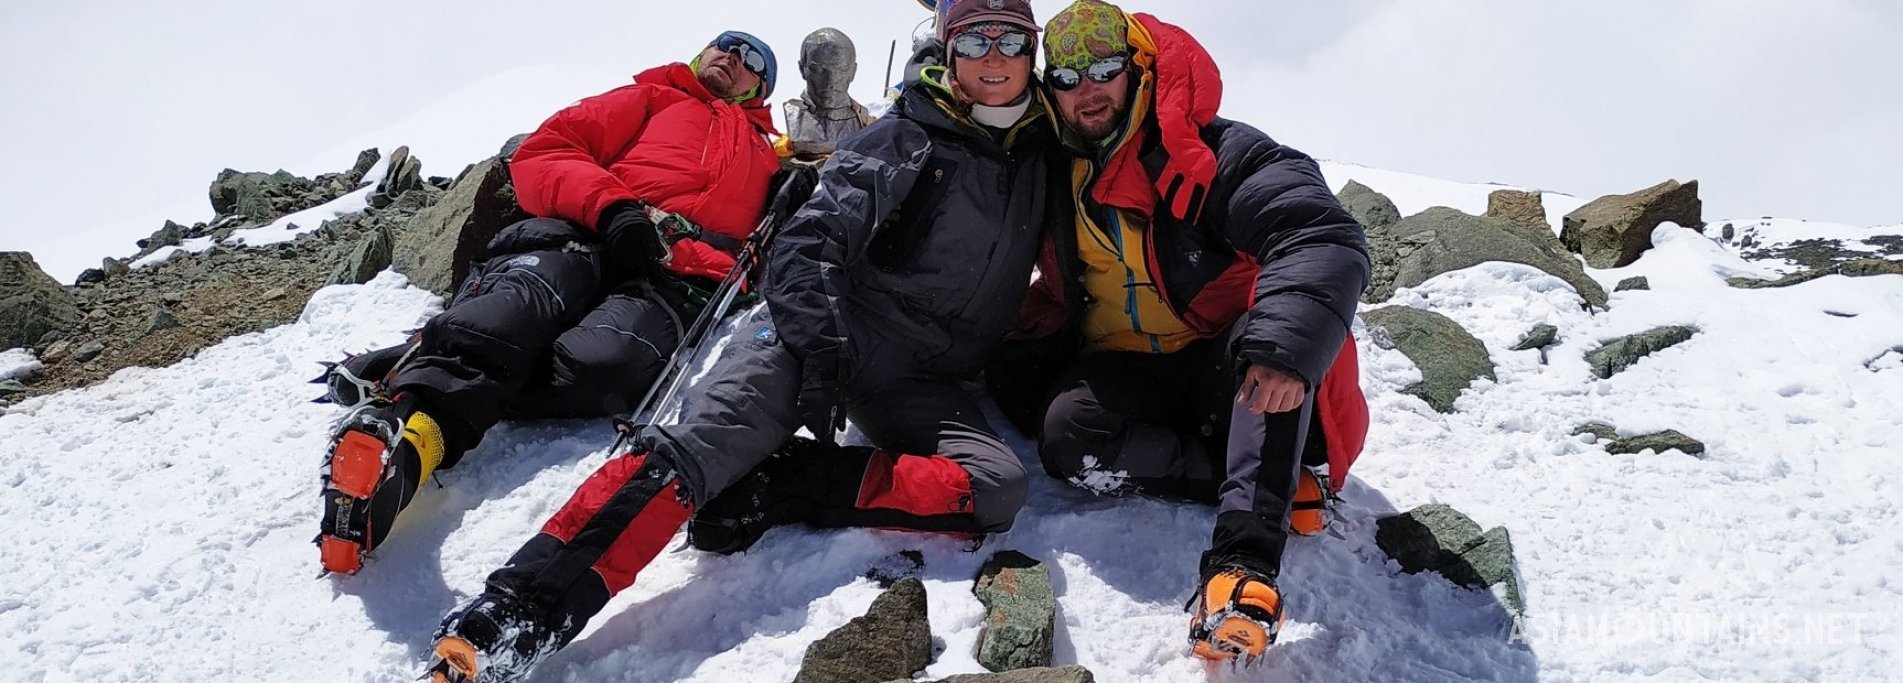 Список альпинистов, поднявшихся на пик Ленина в 2019 году